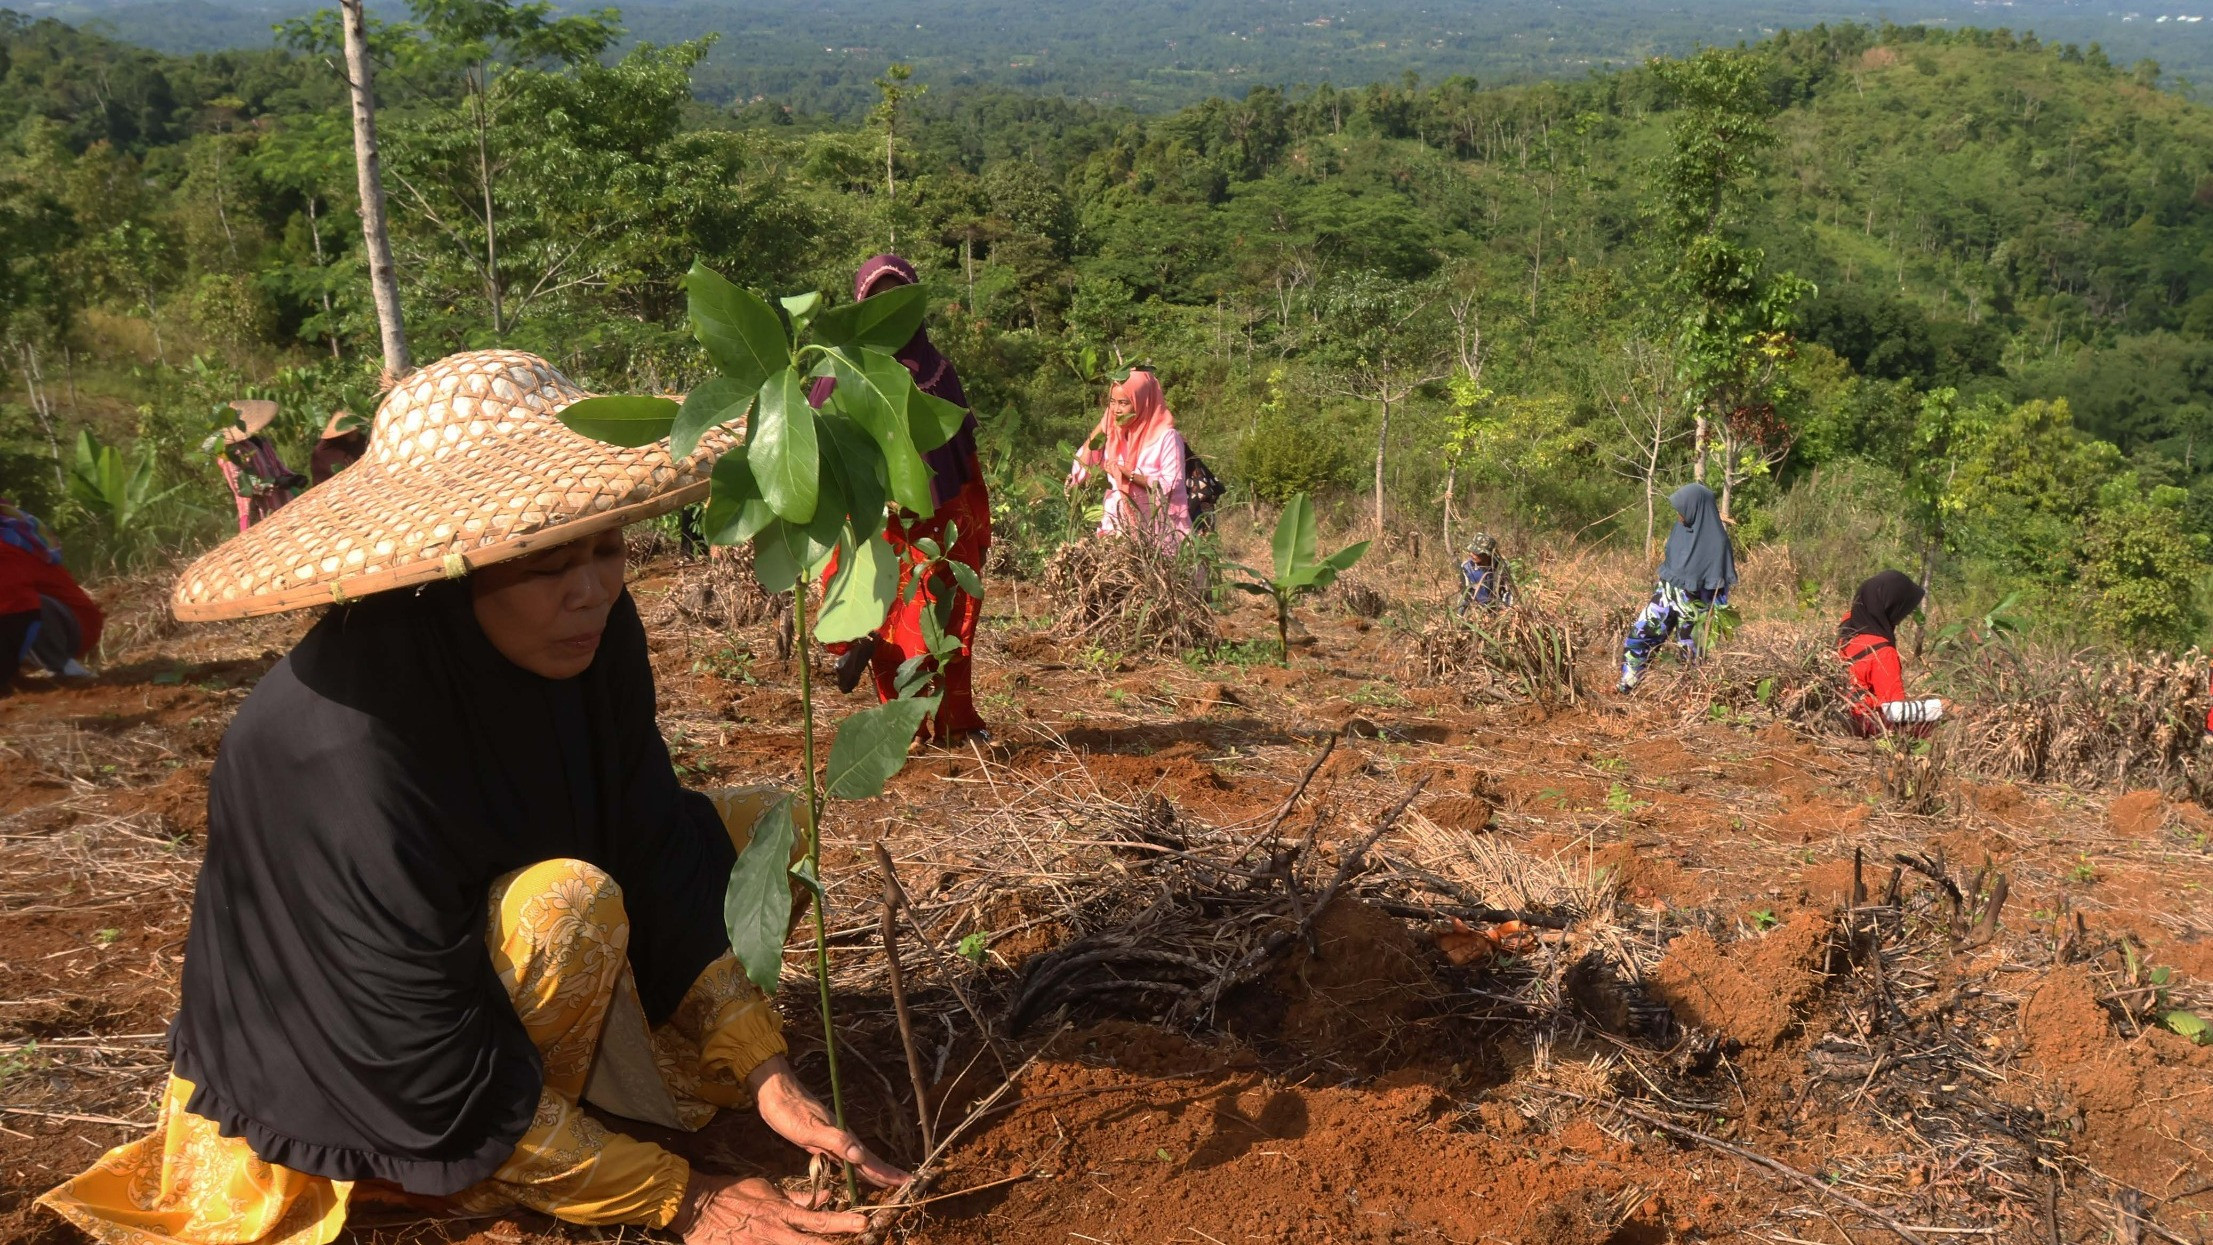 Melihat adanya fenomena meluasnya lahan kritis di Indonesia, PT Telkom Indonesia (Persero) Tbk (Telkom) pun turut mendukung pemerintah dalam pemulihan lahan kritis dan pembangunan berkelanjutan.